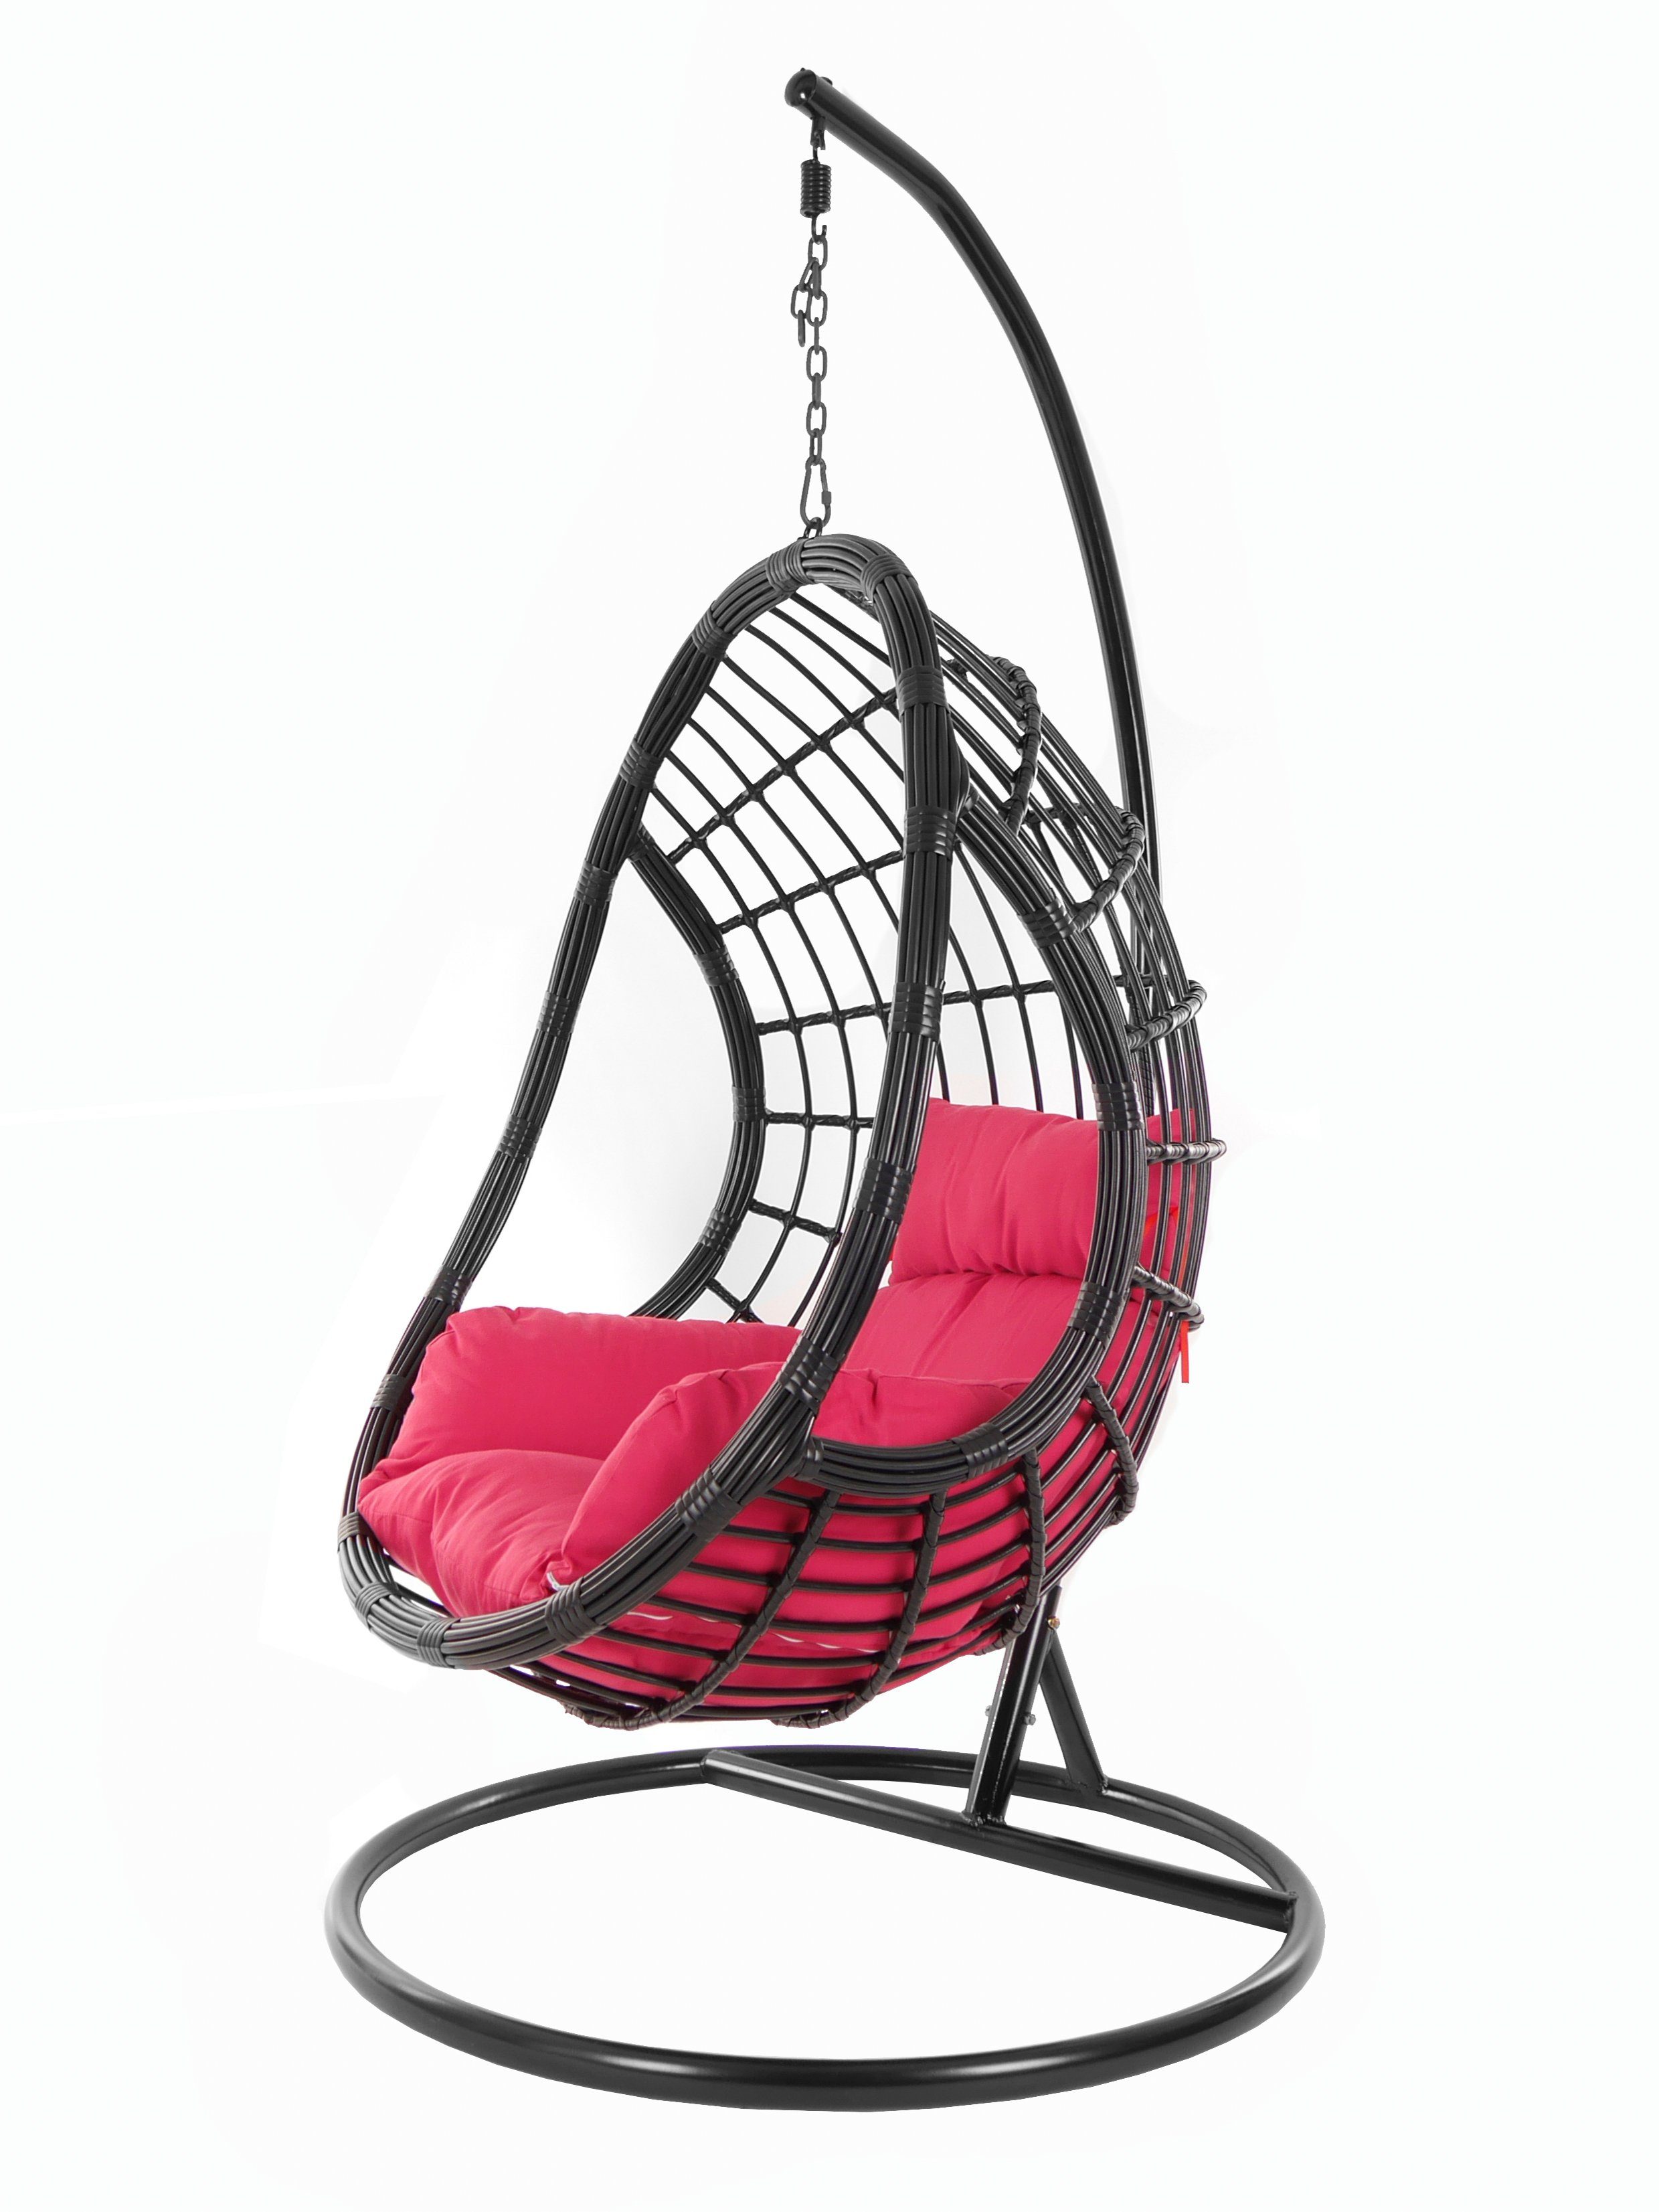 KIDEO Hängesessel PALMANOVA black, Schwebesessel, Swing Chair, Hängesessel mit Gestell und Kissen, Nest-Kissen pink (3333 hot pink)